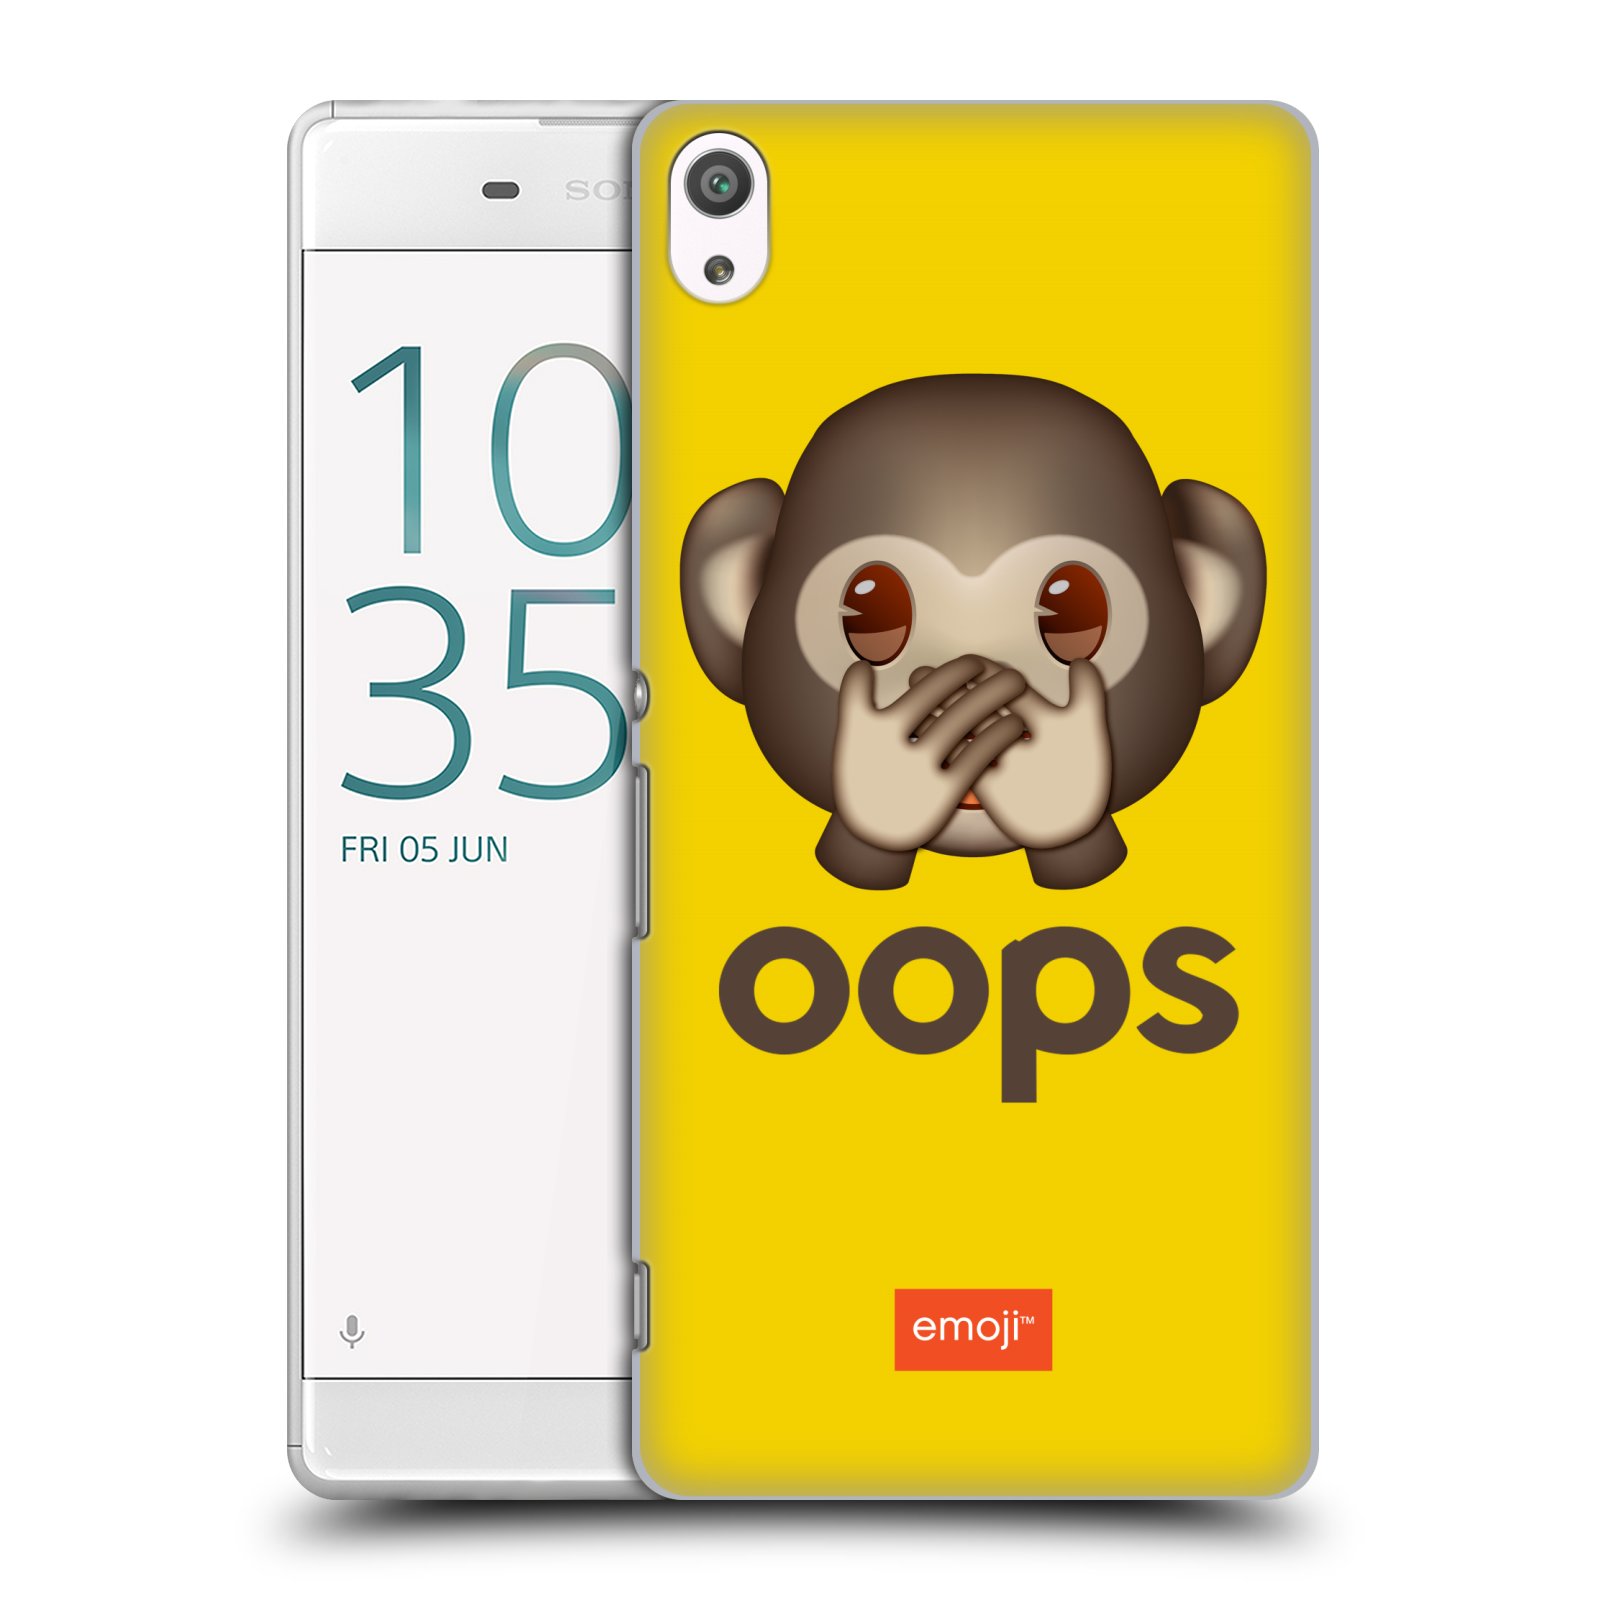 Pouzdro na mobil Sony Xperia XA ULTRA - HEAD CASE - Emoji opička Oops